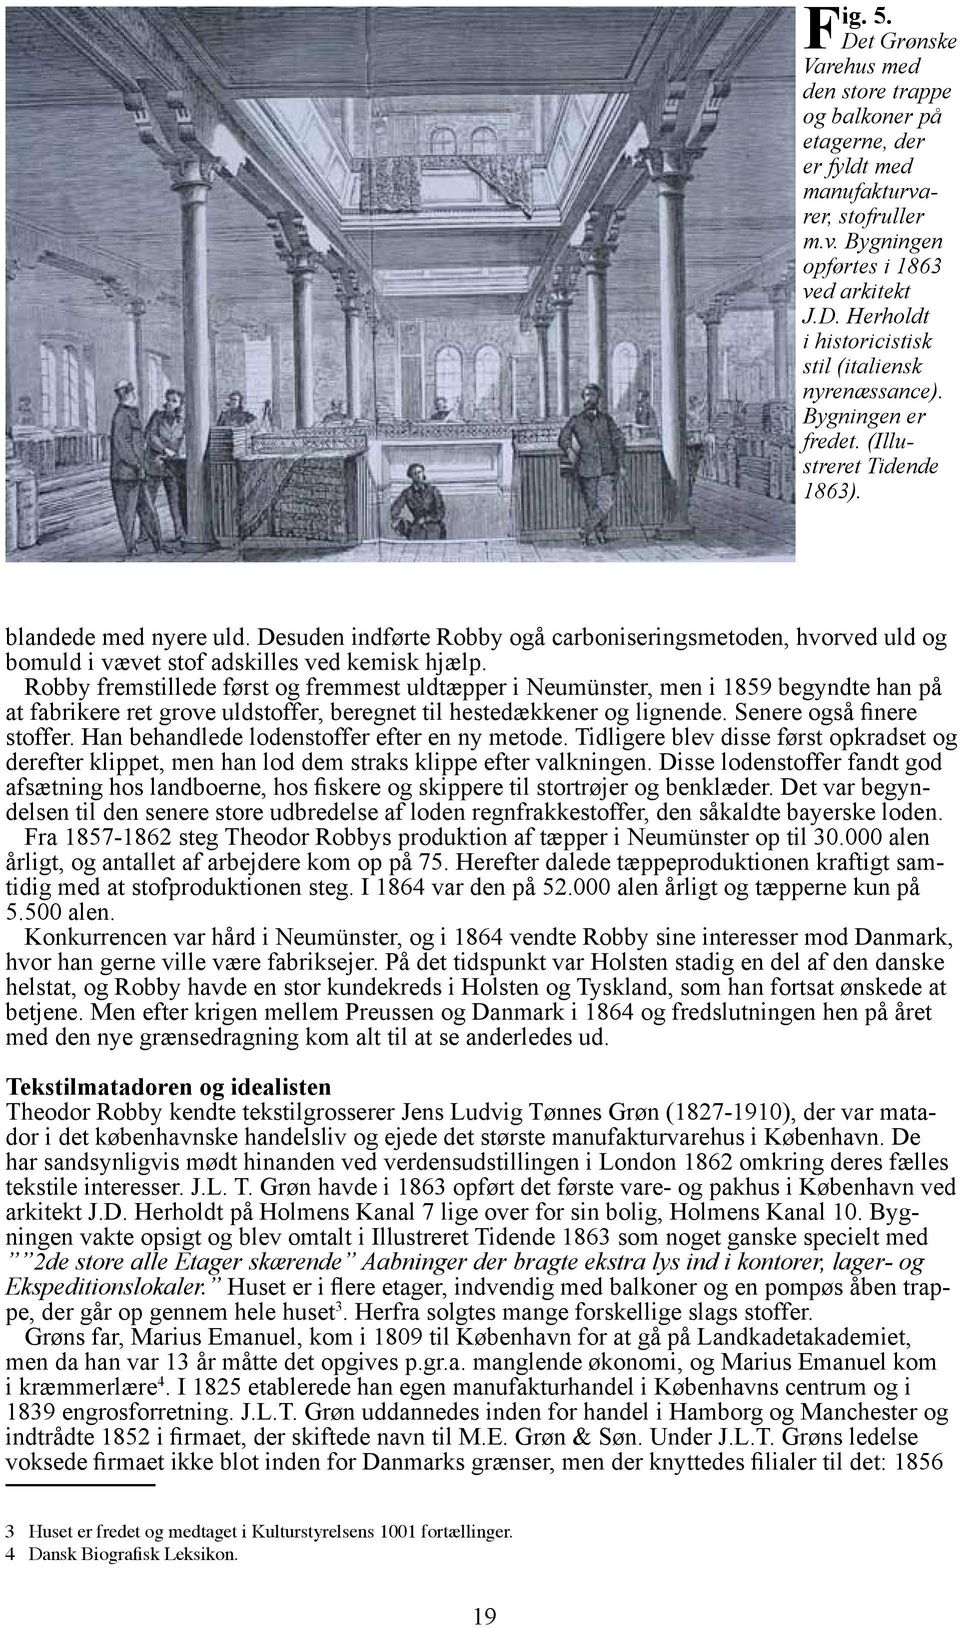 Robby fremstillede først og fremmest uldtæpper i Neumünster, men i 1859 begyndte han på at fabrikere ret grove uldstoffer, beregnet til hestedækkener og lignende. Senere også finere stoffer.